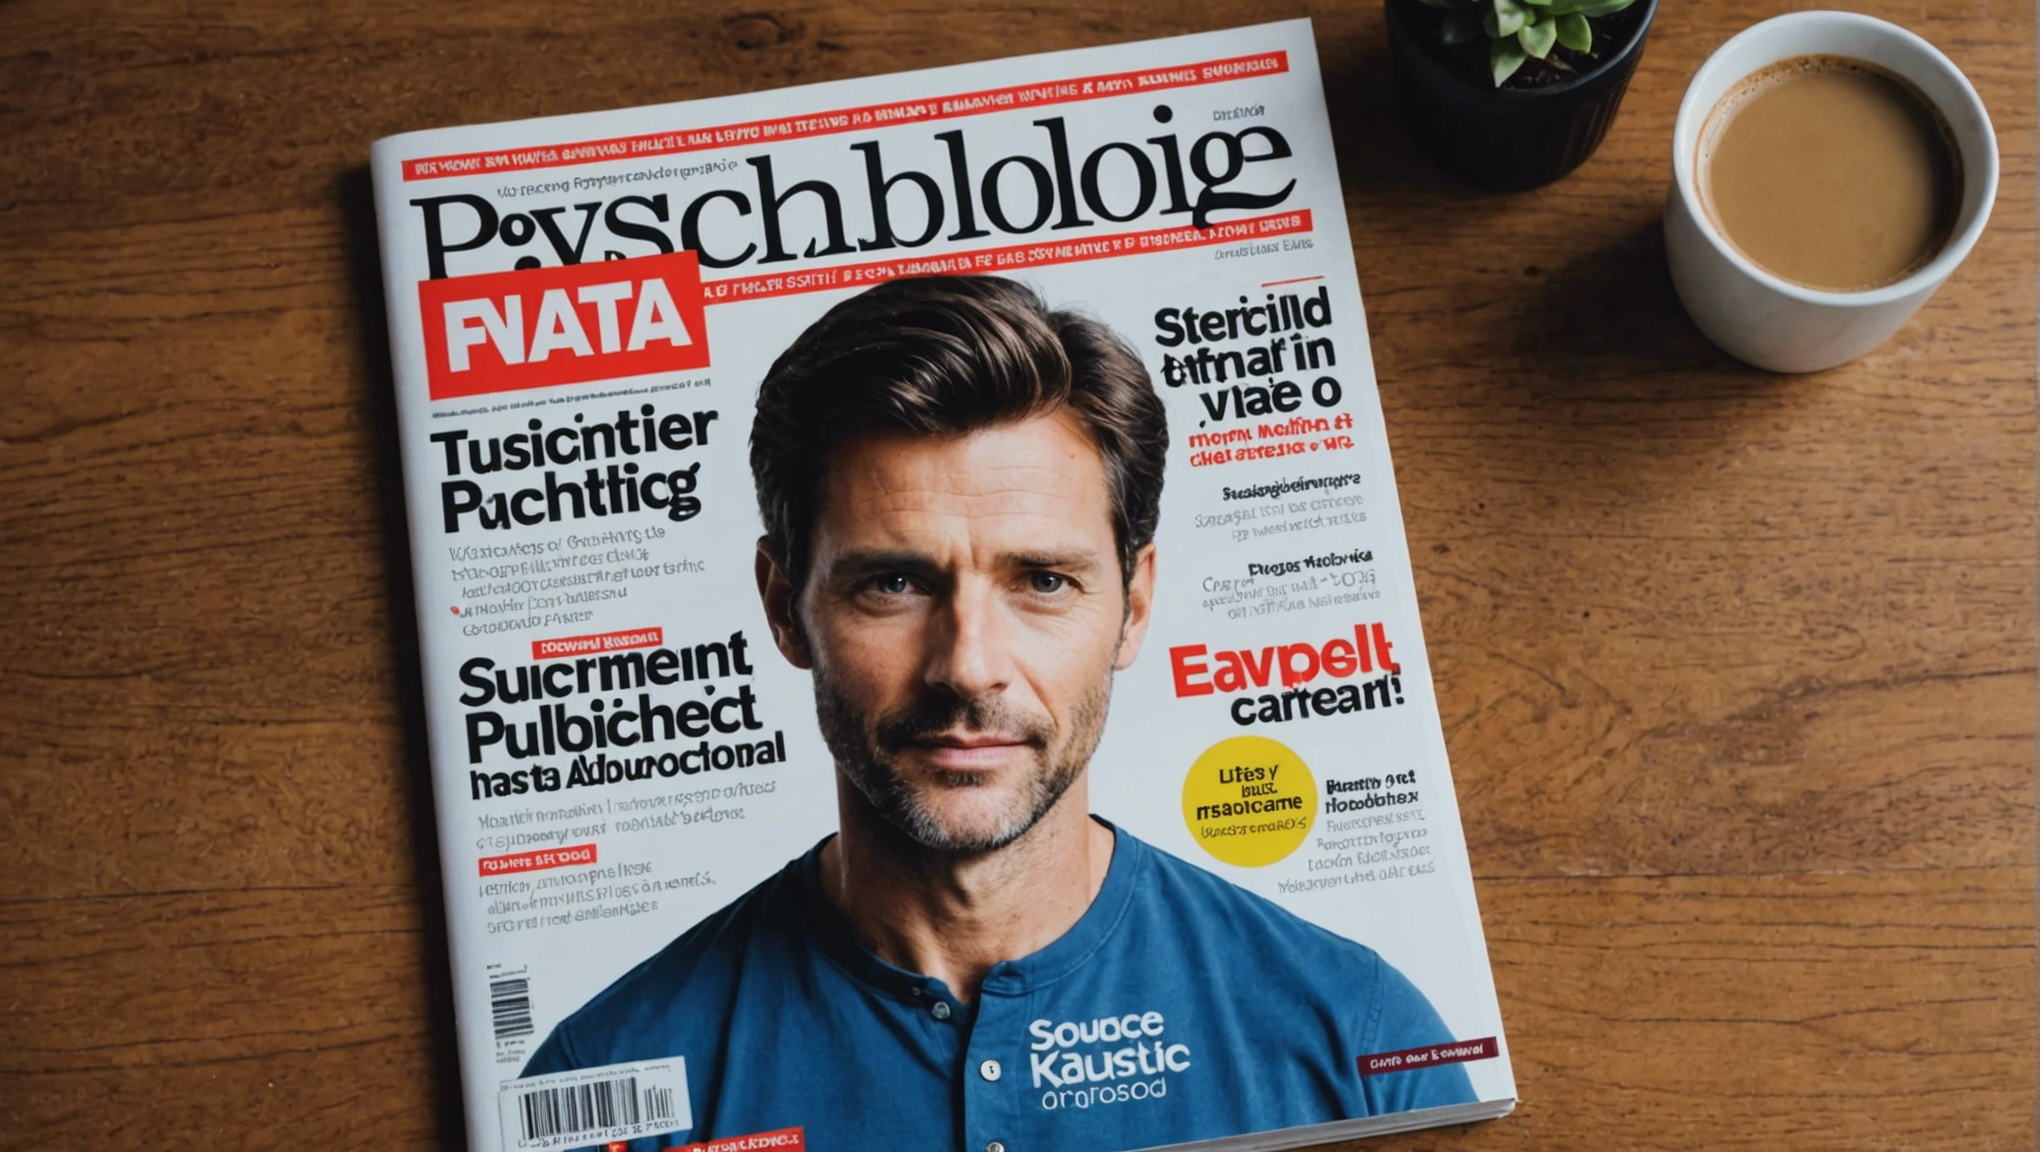 découvrez les raisons de souscrire à un abonnement au magazine de psychologie et enrichissez votre compréhension de l'esprit humain et du comportement.